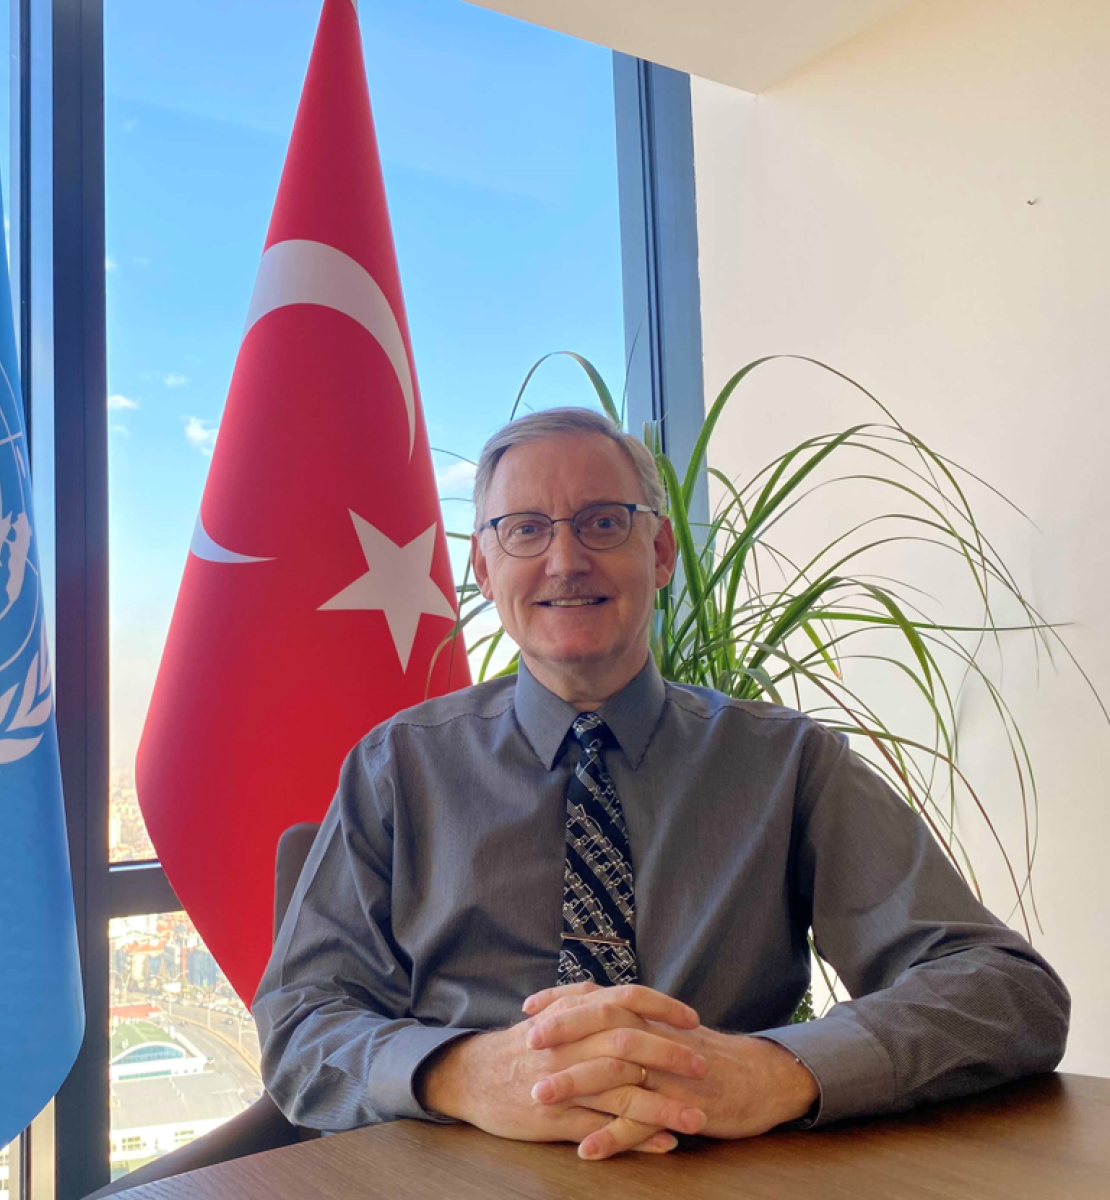 新任联合国驻土耳其协调员阿尔瓦罗·罗德里格斯的官方照片。他坐在办公桌前，双手合十，背对联合国和土耳其的旗帜微笑。